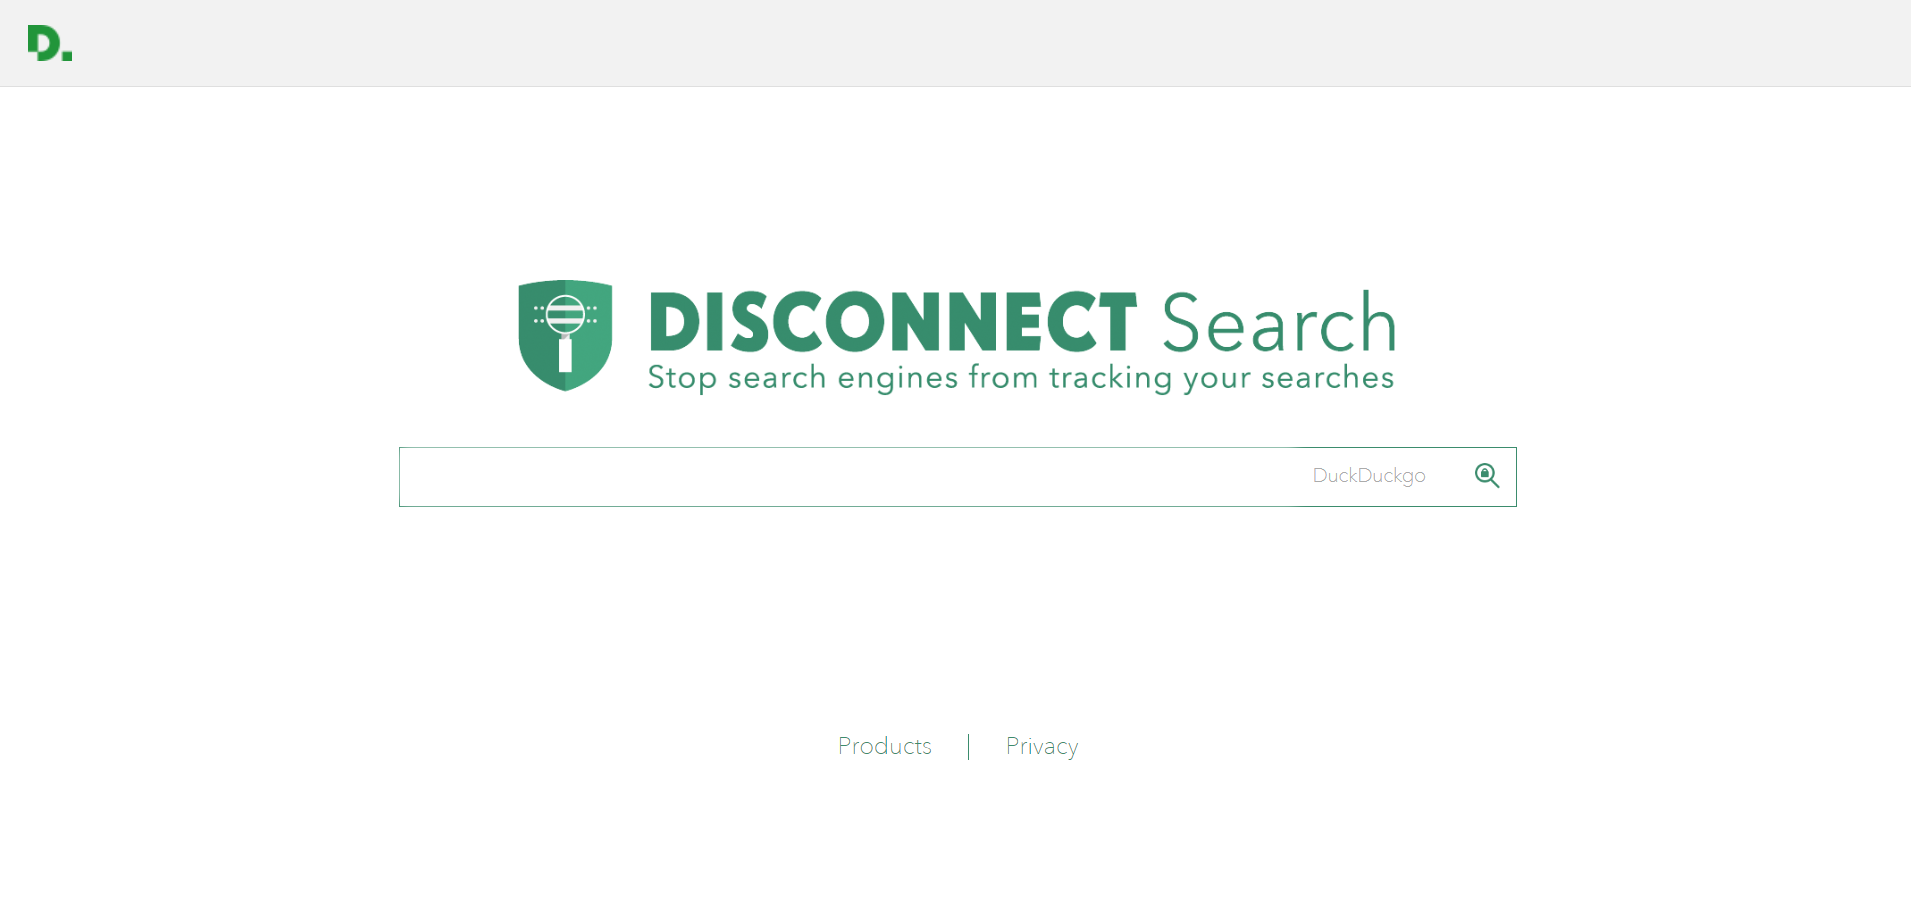 Buscadores aparte de Google: Disconnect